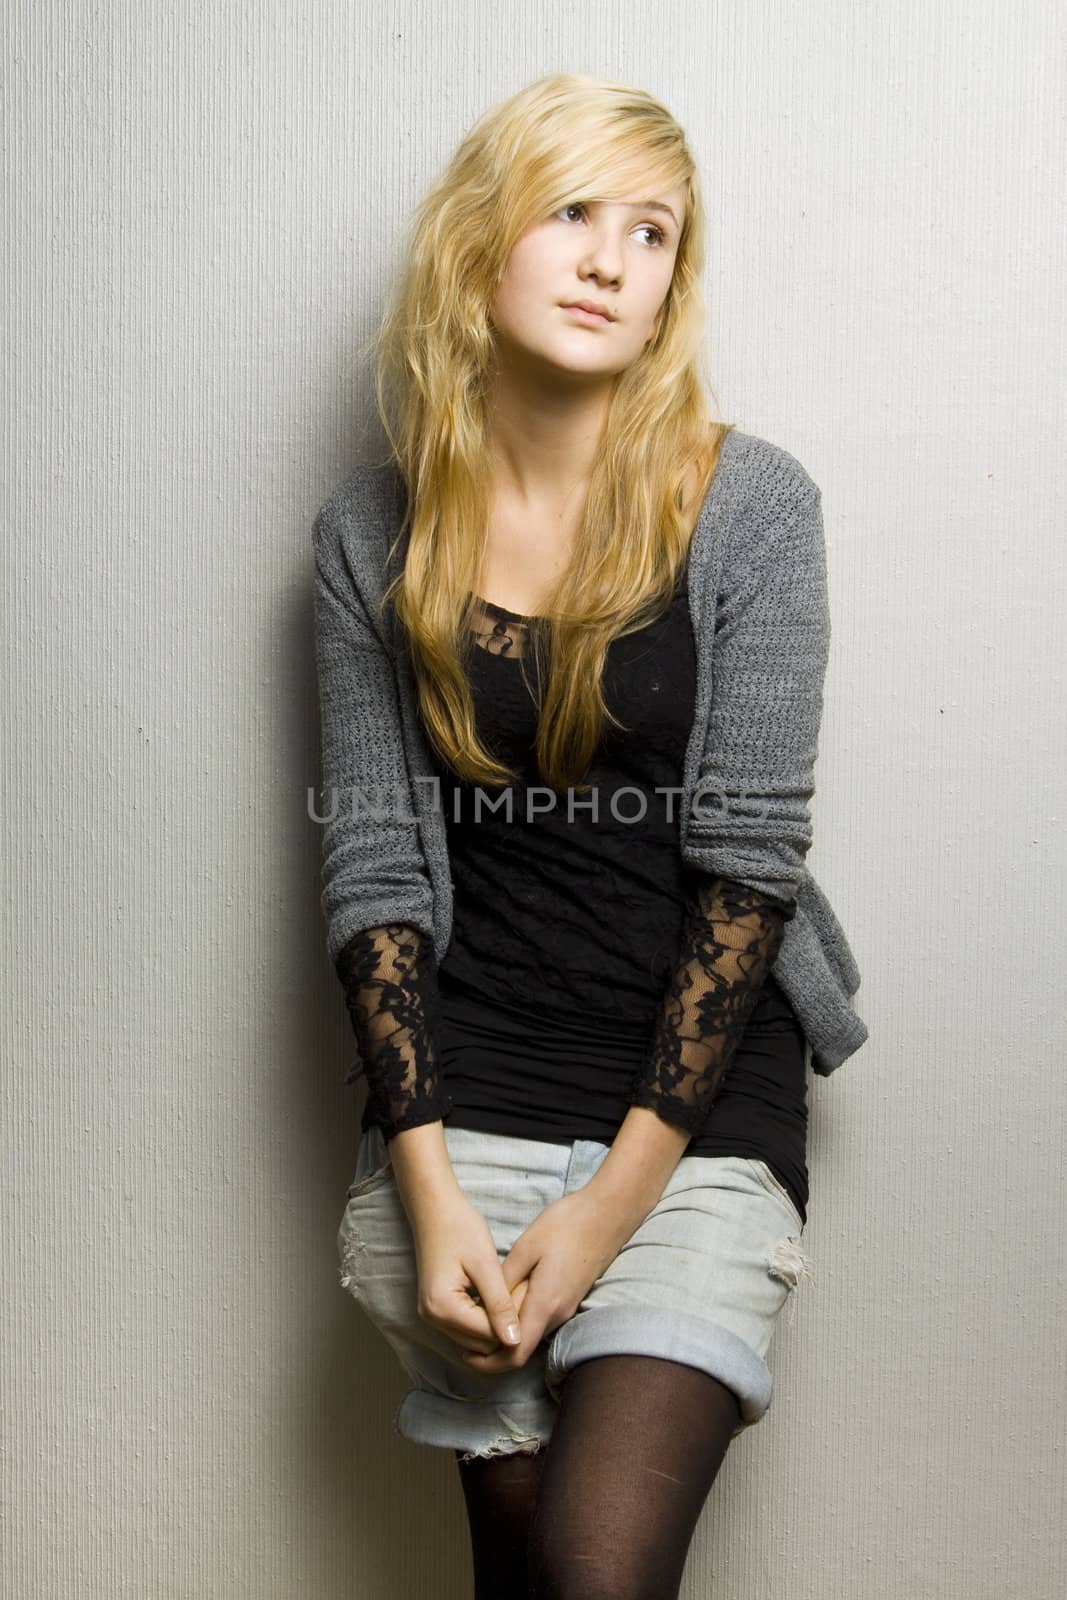 Portrait of young beautiful teenage girl